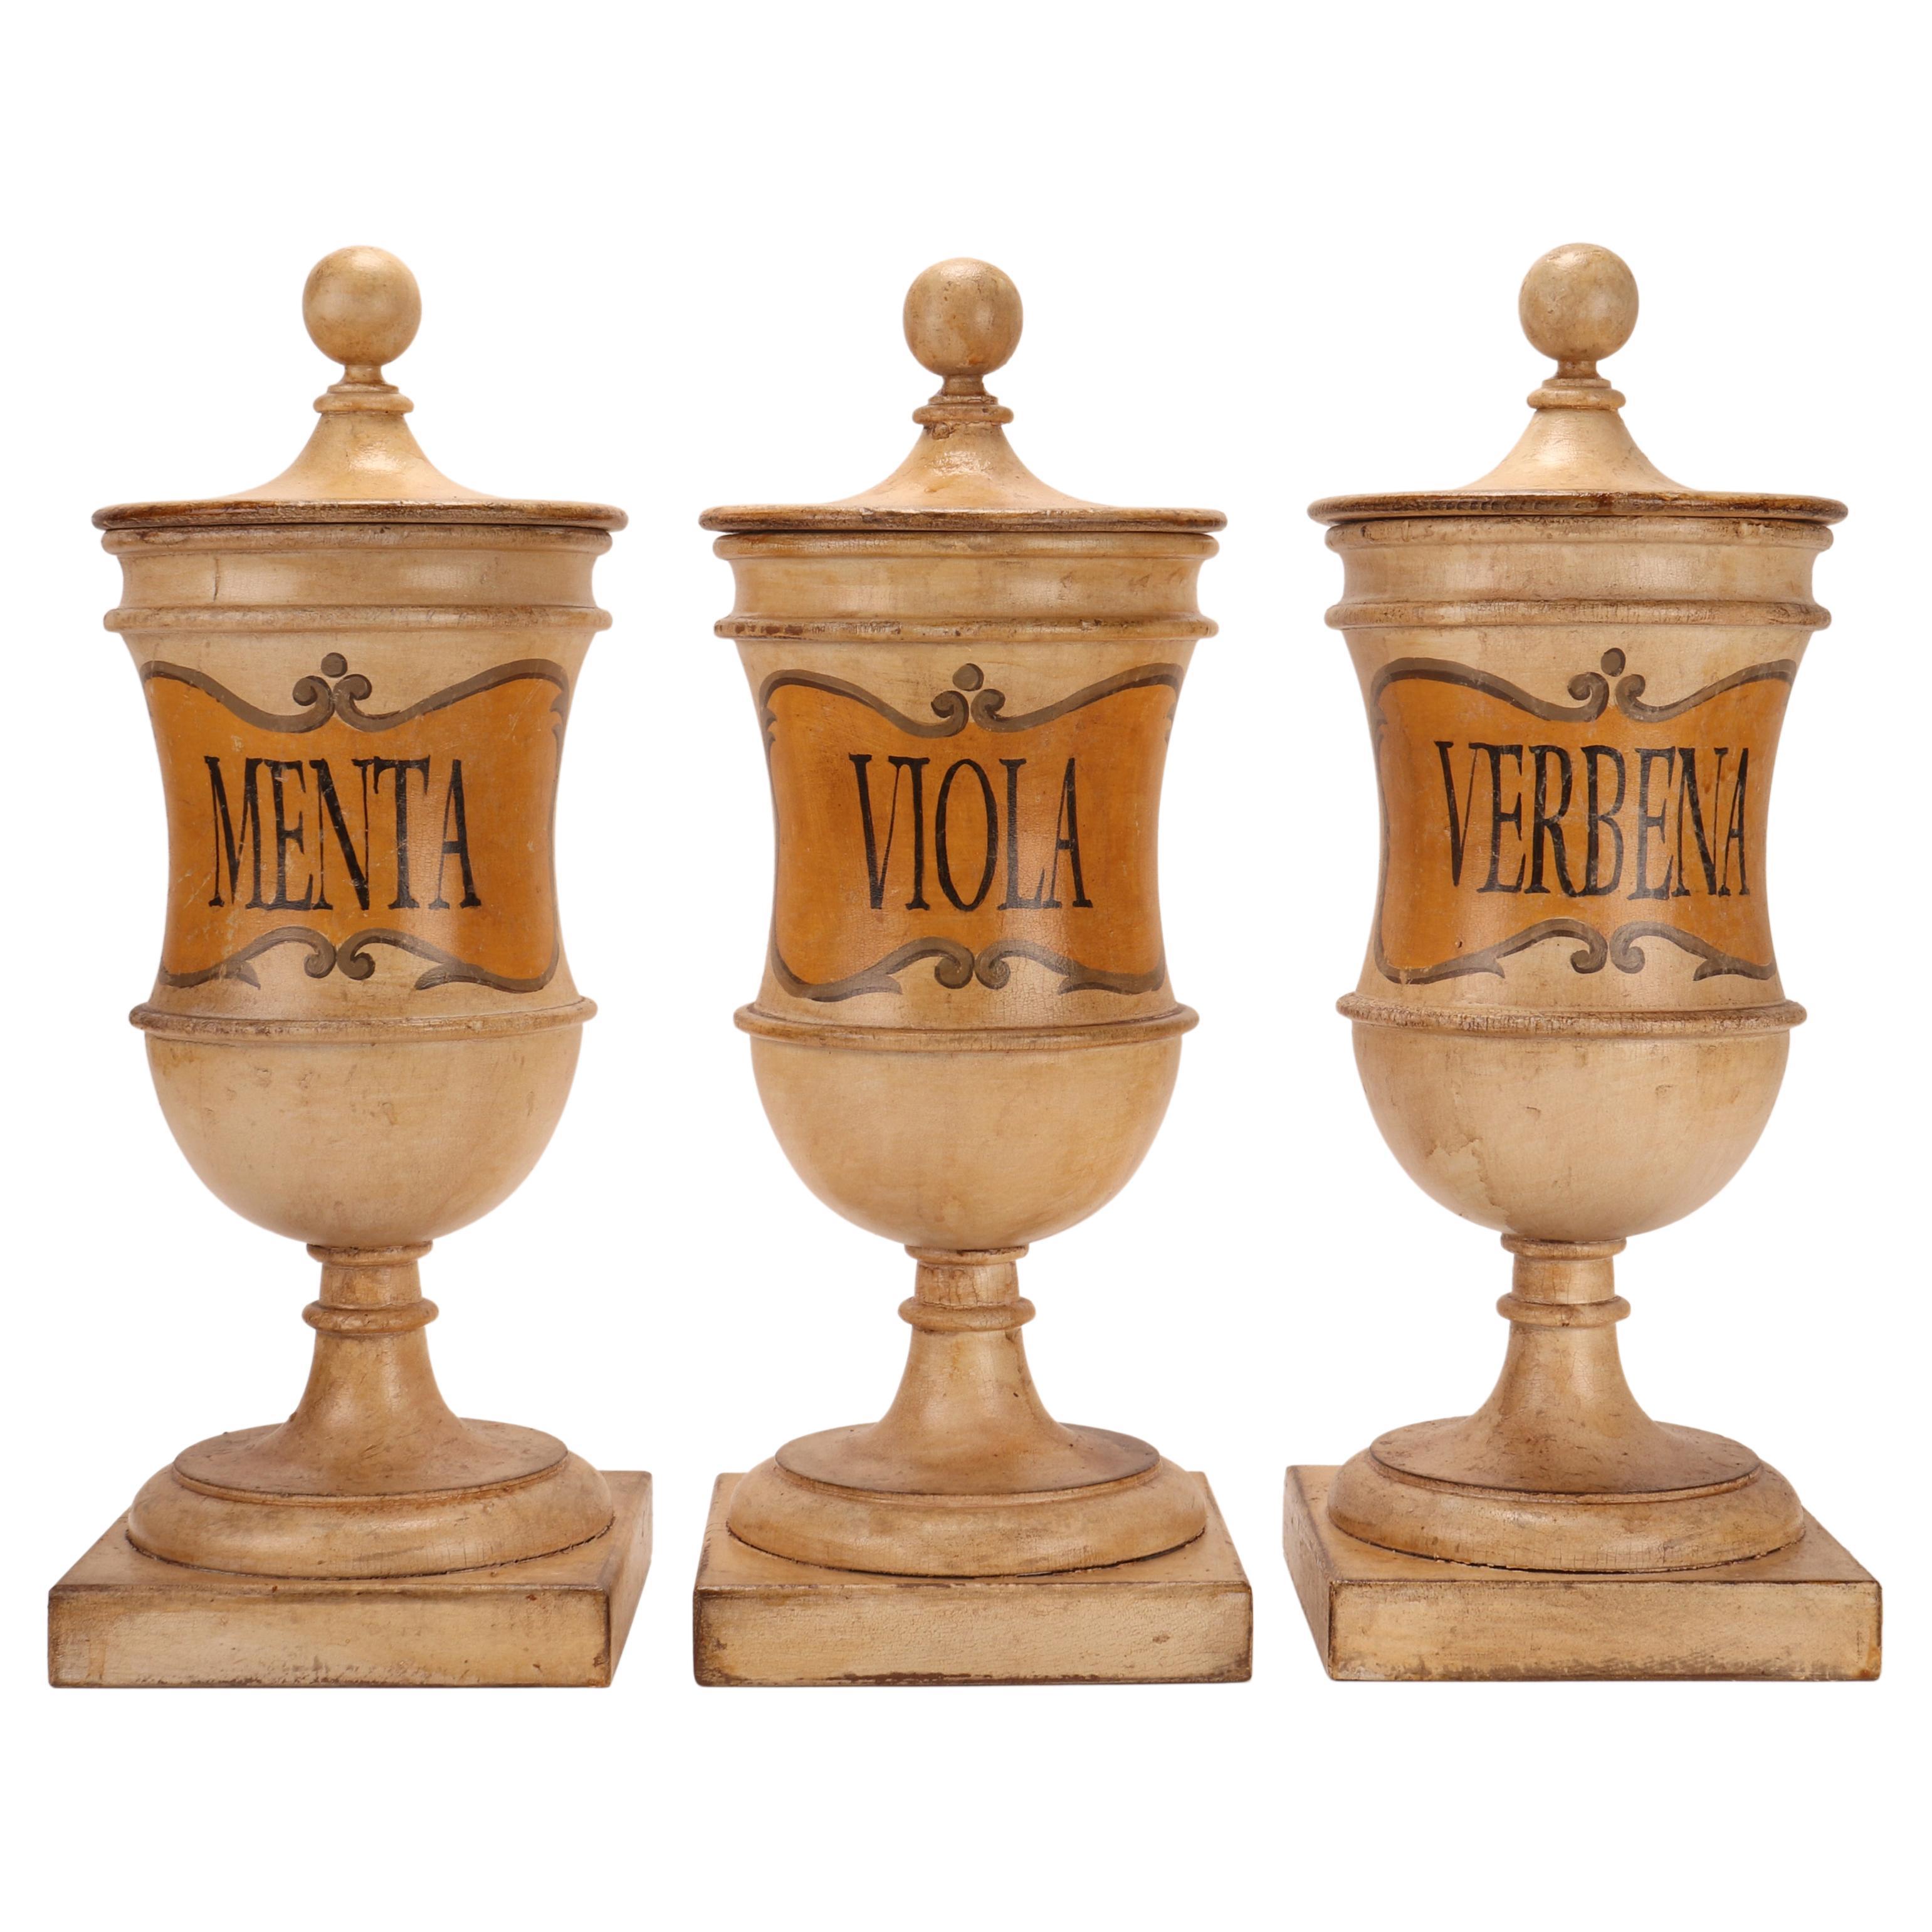 Herbalist Pharmacy Wooden Jars, Italy 1870